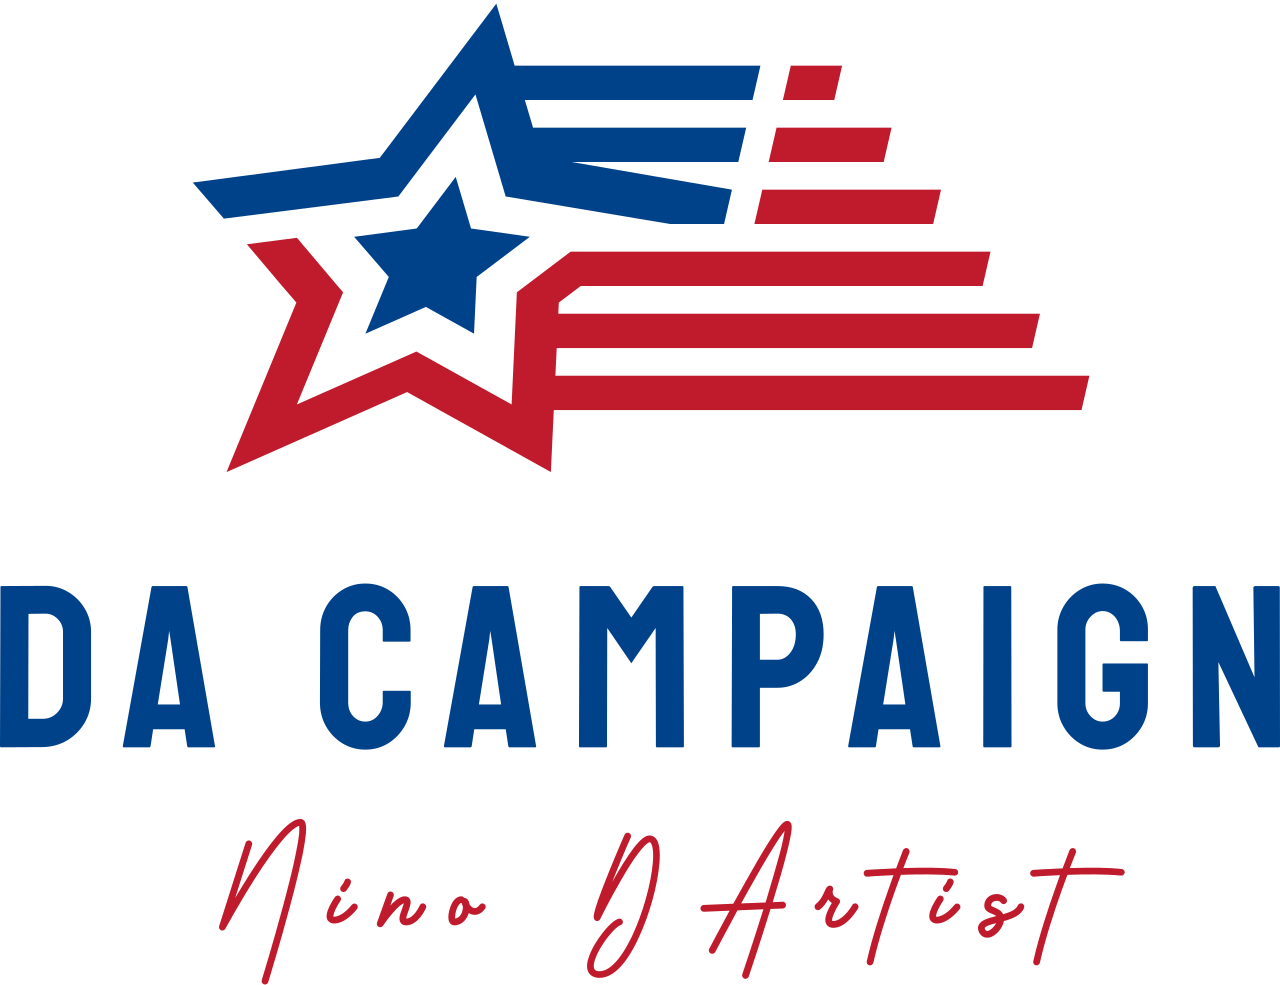 Da Campaign's web page